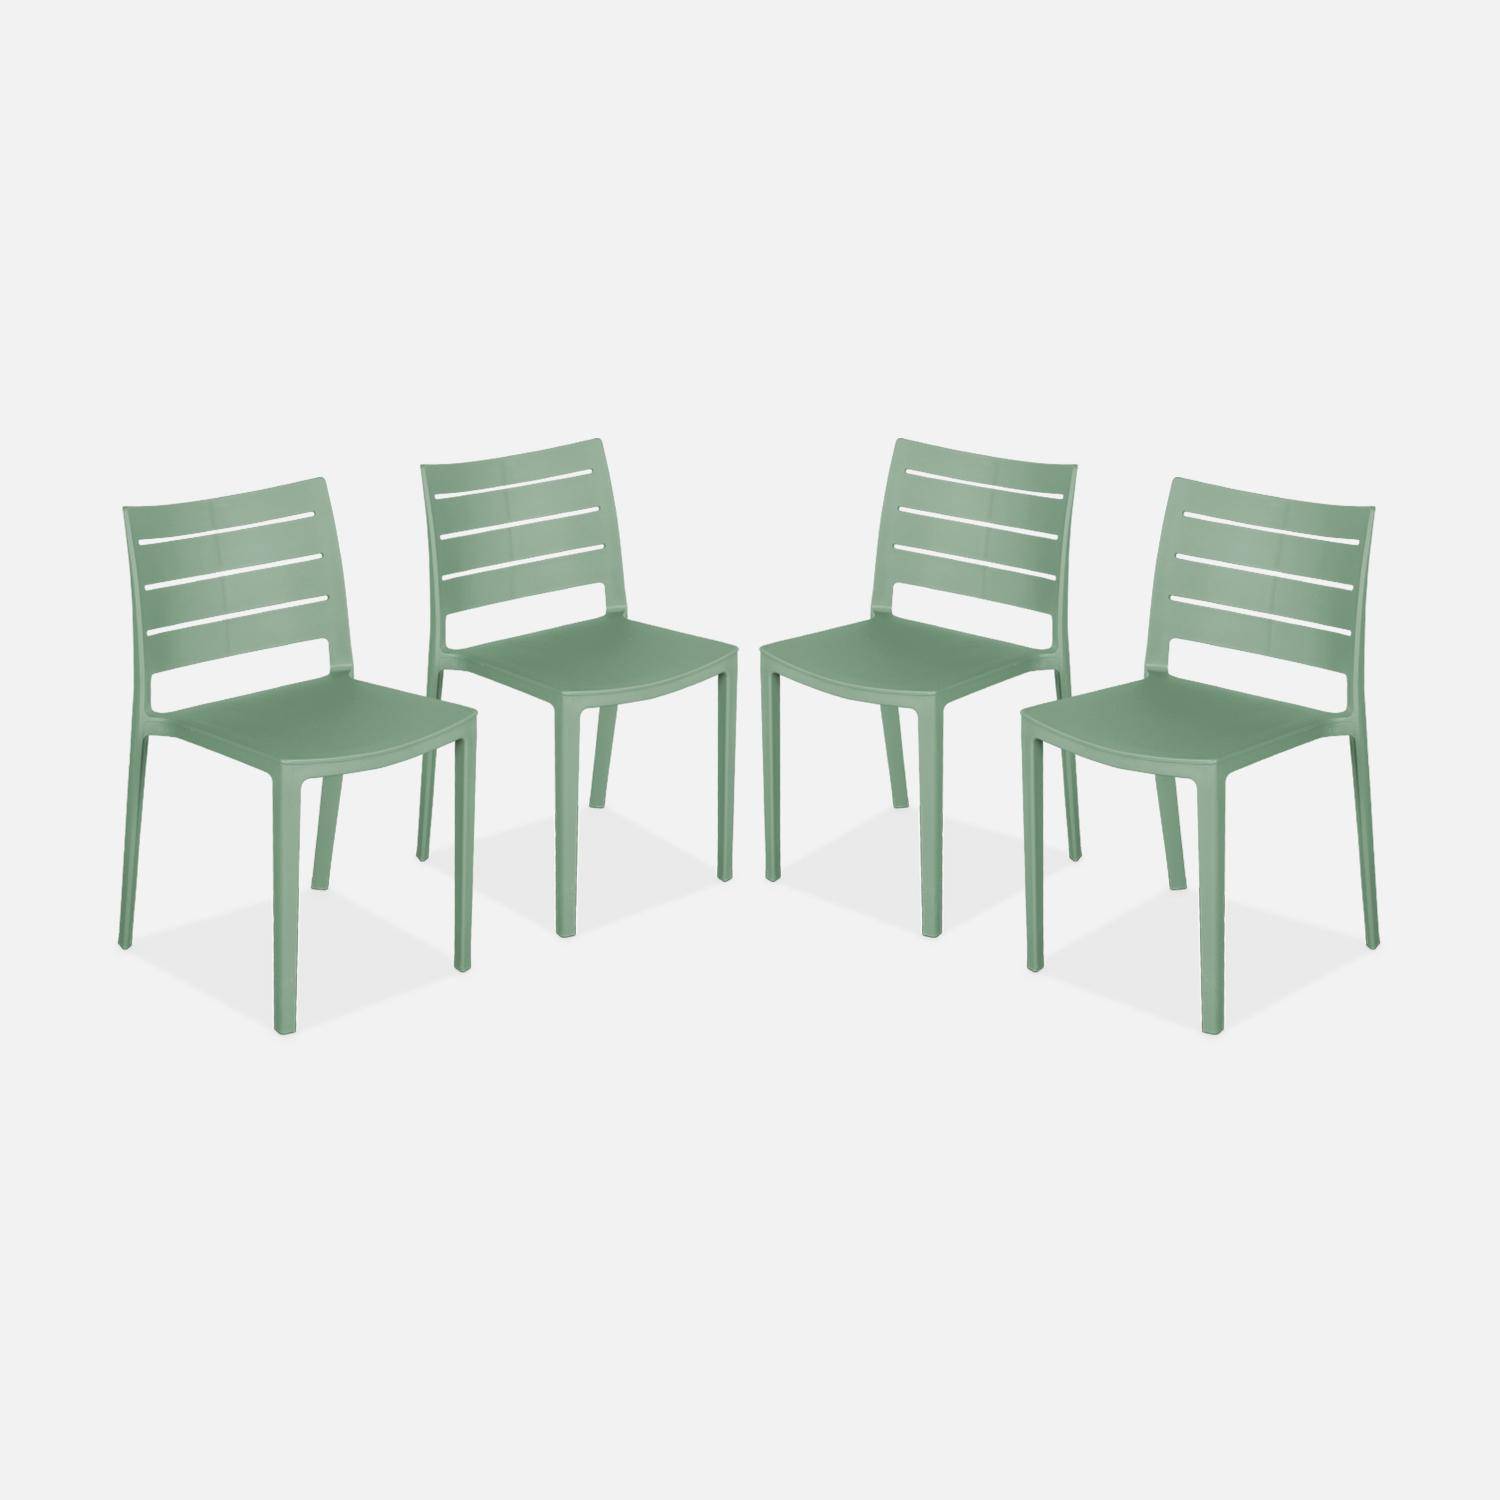 4er Set Gartenstühle aus graugrünem Kunststoff, stapelbar, bereits zusammengebaut - Jeanne,sweeek,Photo1